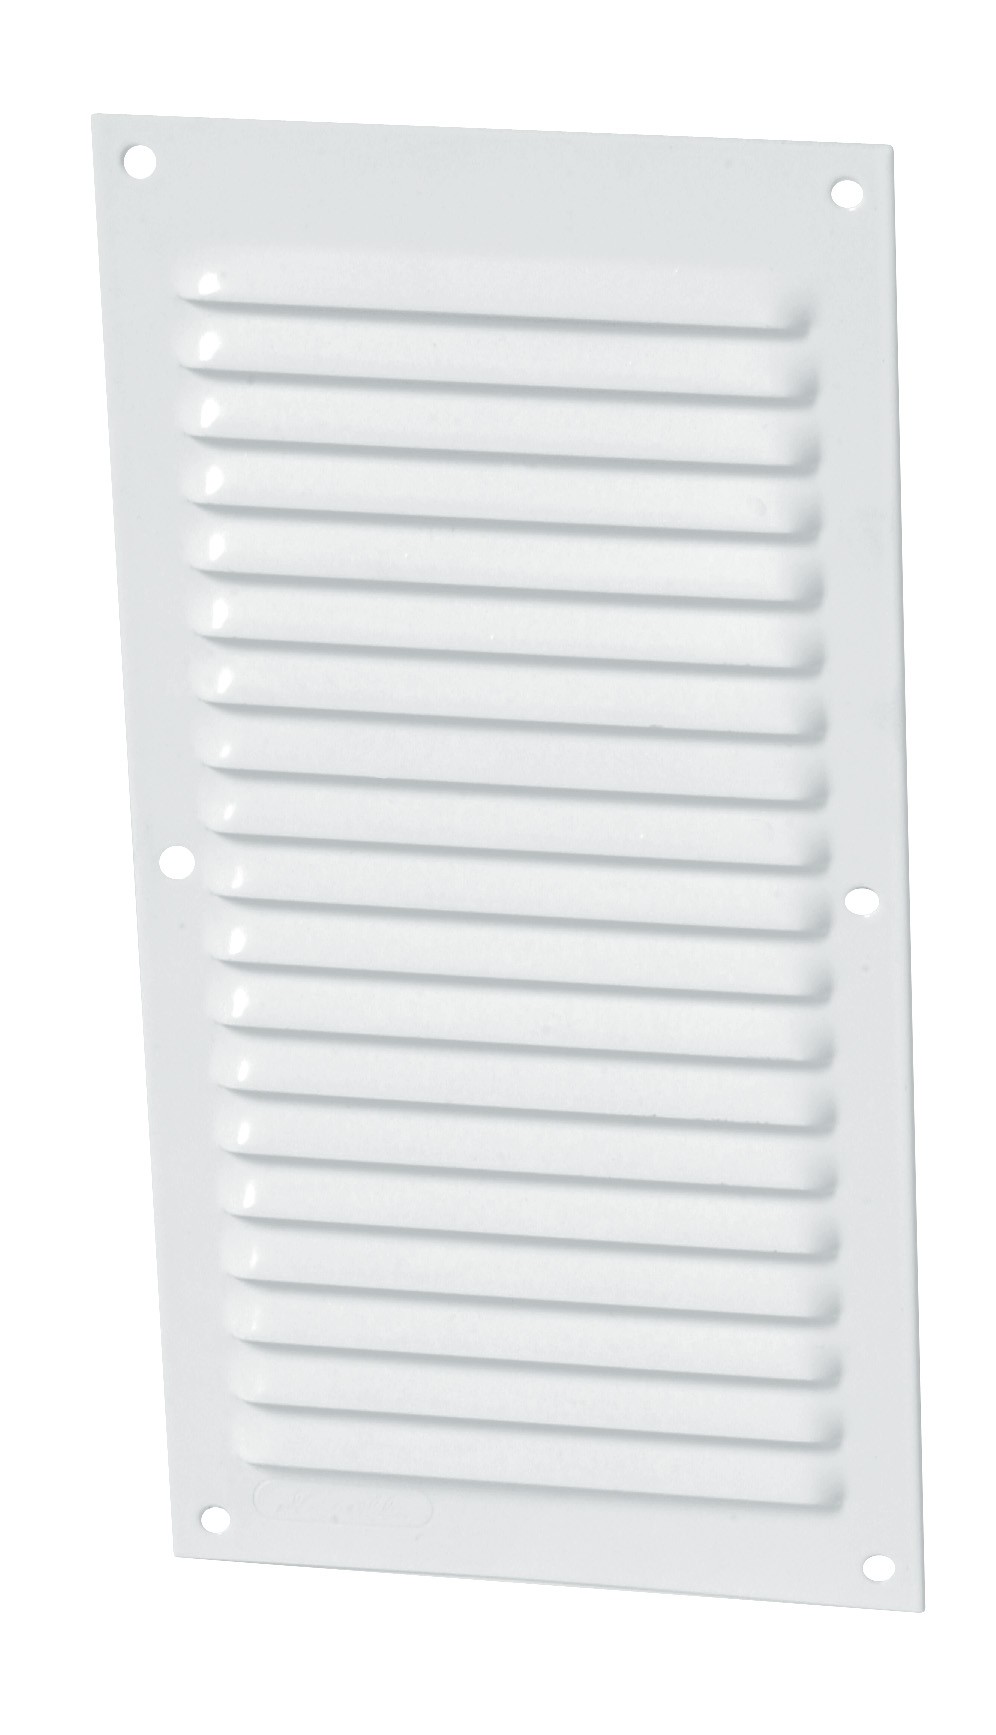 Aluminio lacado blanco con mosquitera: Rectangular vertical 20x10